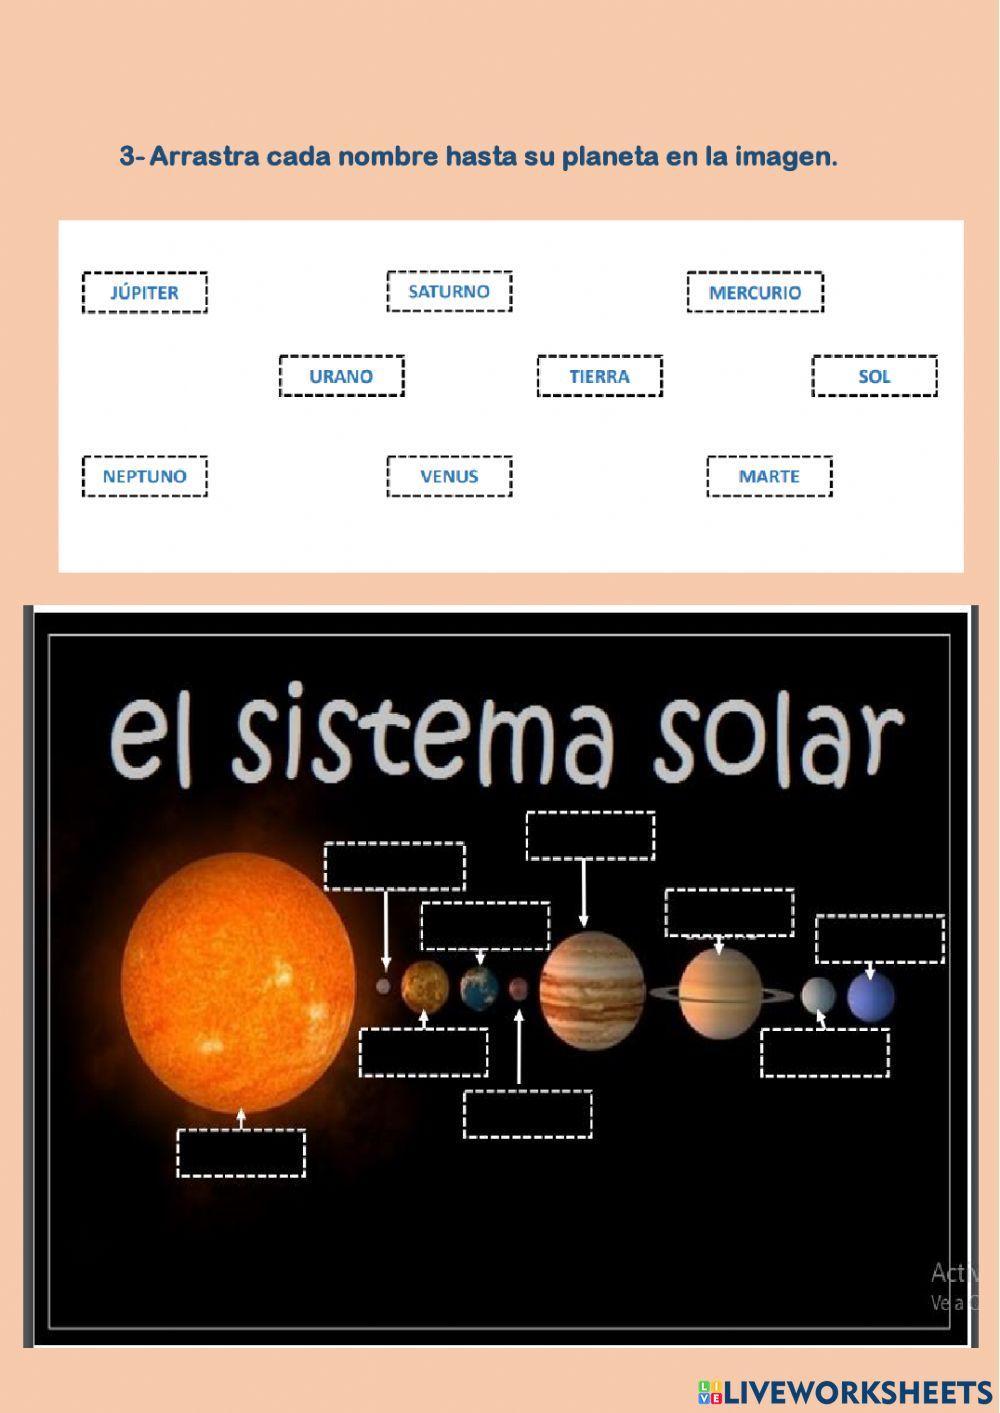 El Universo y el Sistema Solar